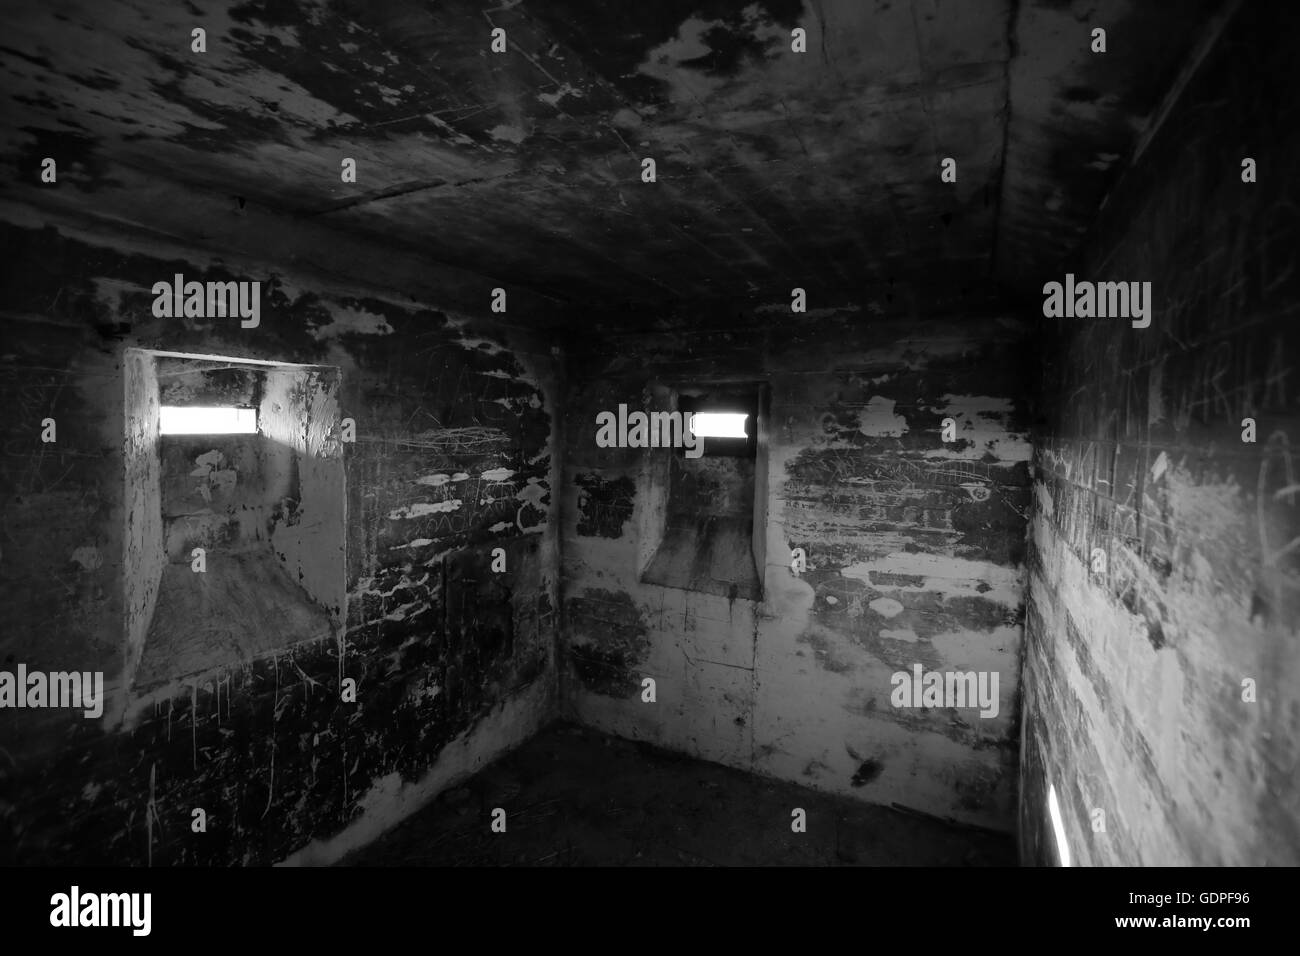 Vista in un piccolo ambiente confinato in un vecchio bunker della Seconda guerra mondiale nelle vicinanze Lostau, Sassonia-Anhalt, Germania. Immagine in bianco e nero. Foto Stock